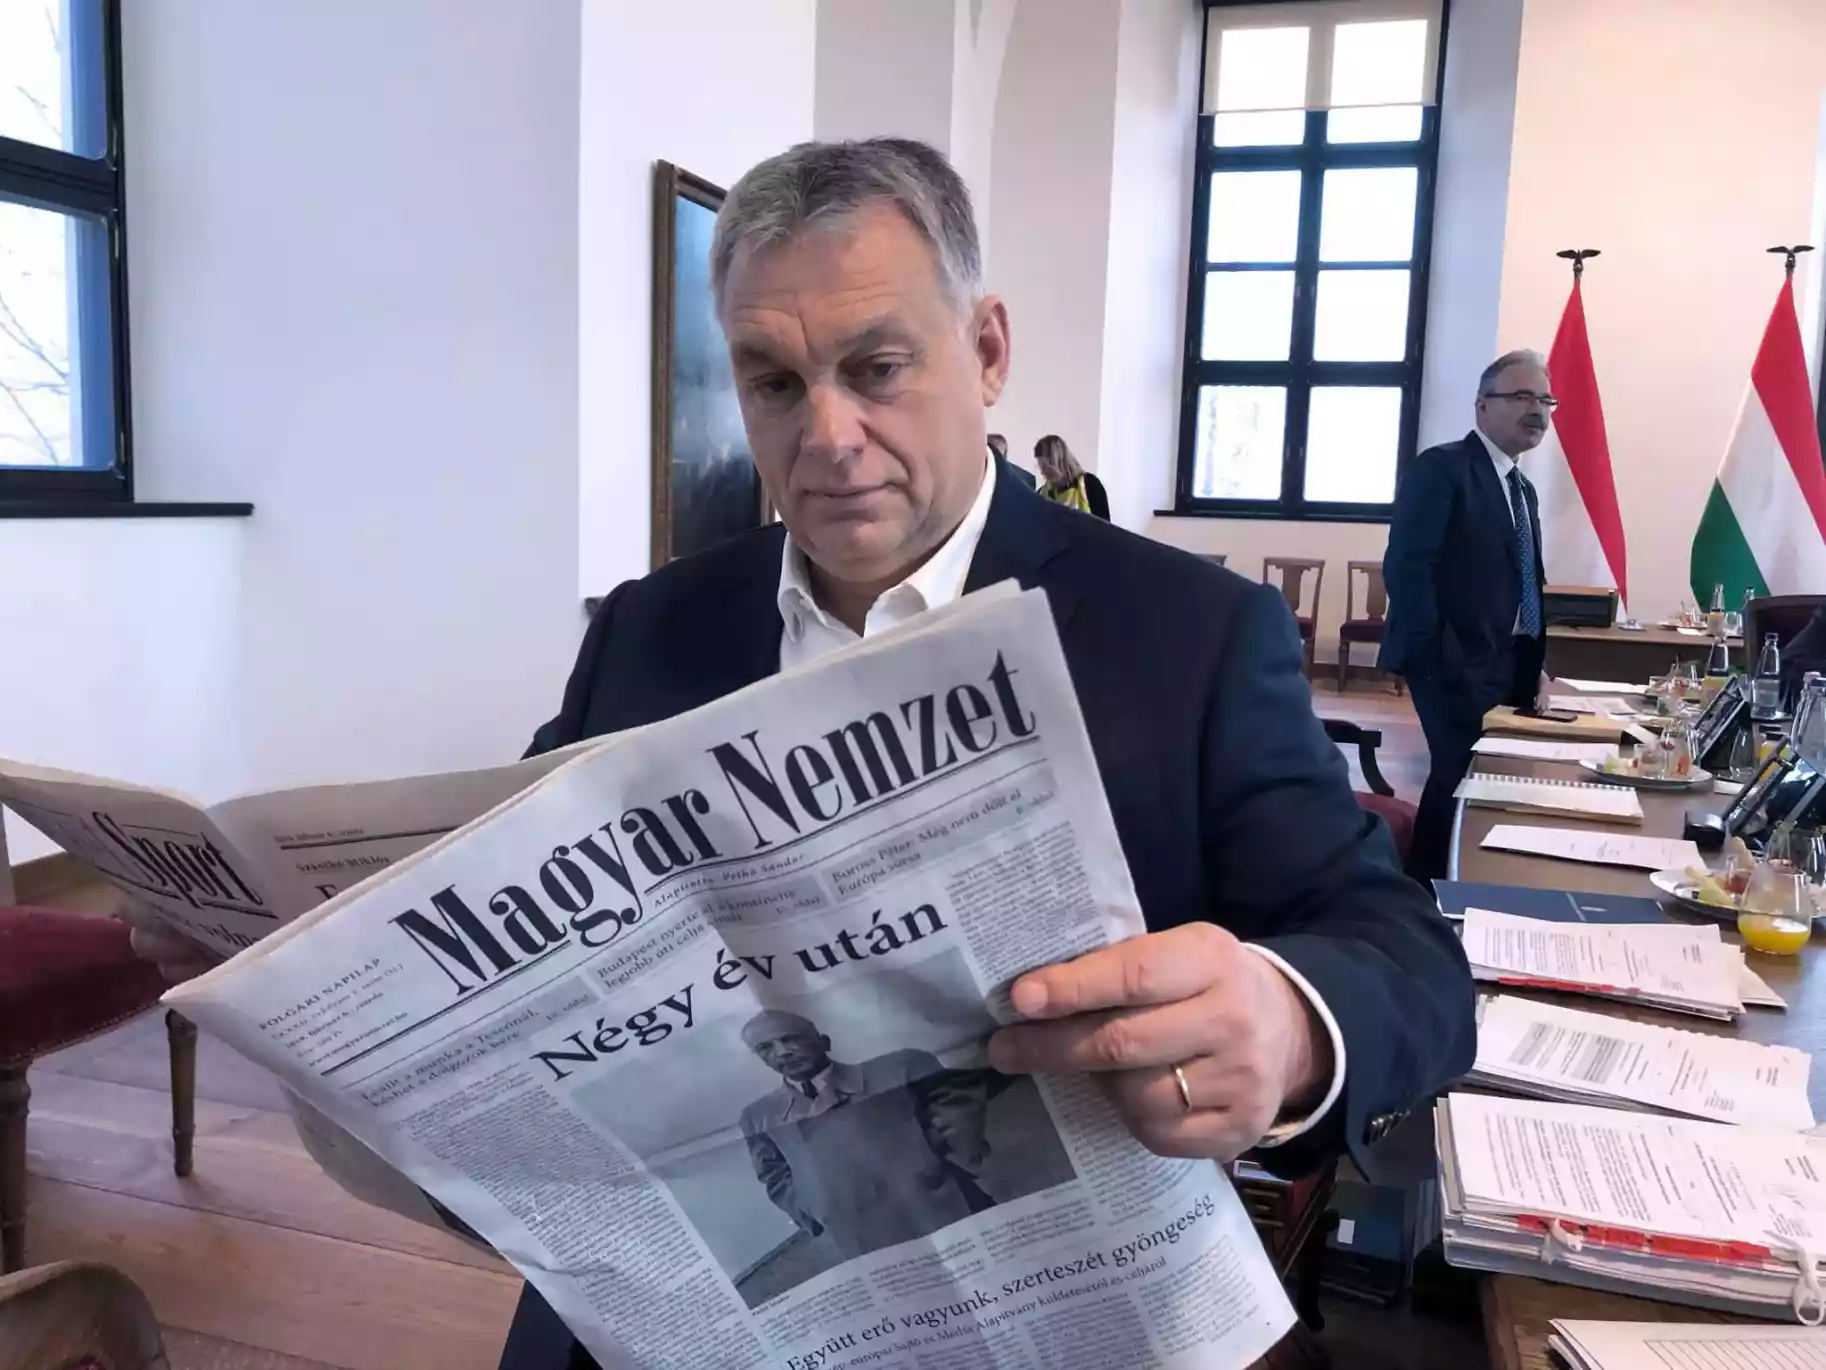 Угорська газета, яку вважають рупором Орбана, опублікувала статтю з критикою на адресу українських медіа